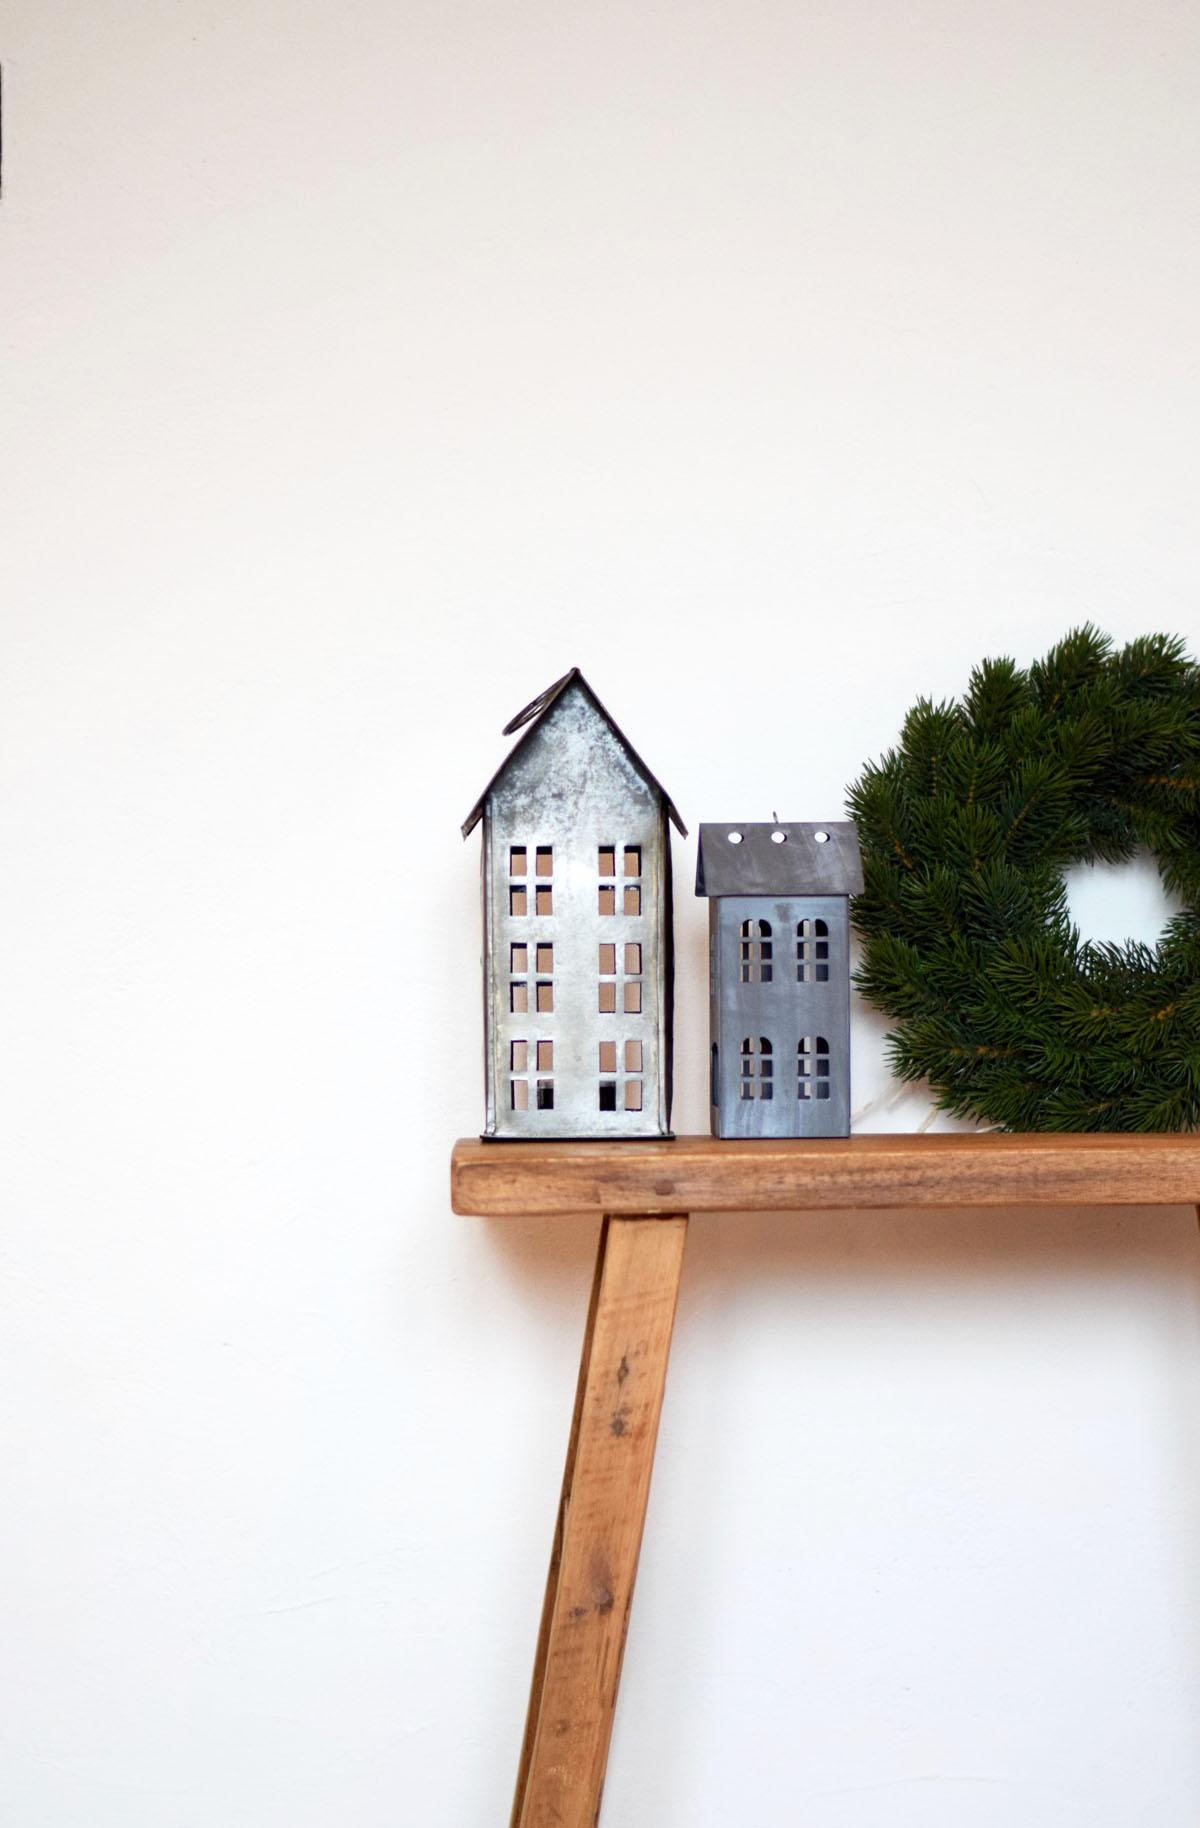 Zinkhäuser und Tannengrün... weihnachtliches Soft-Opening...
#weihnachtsdeko #zinkhäuser #Tannenkranz